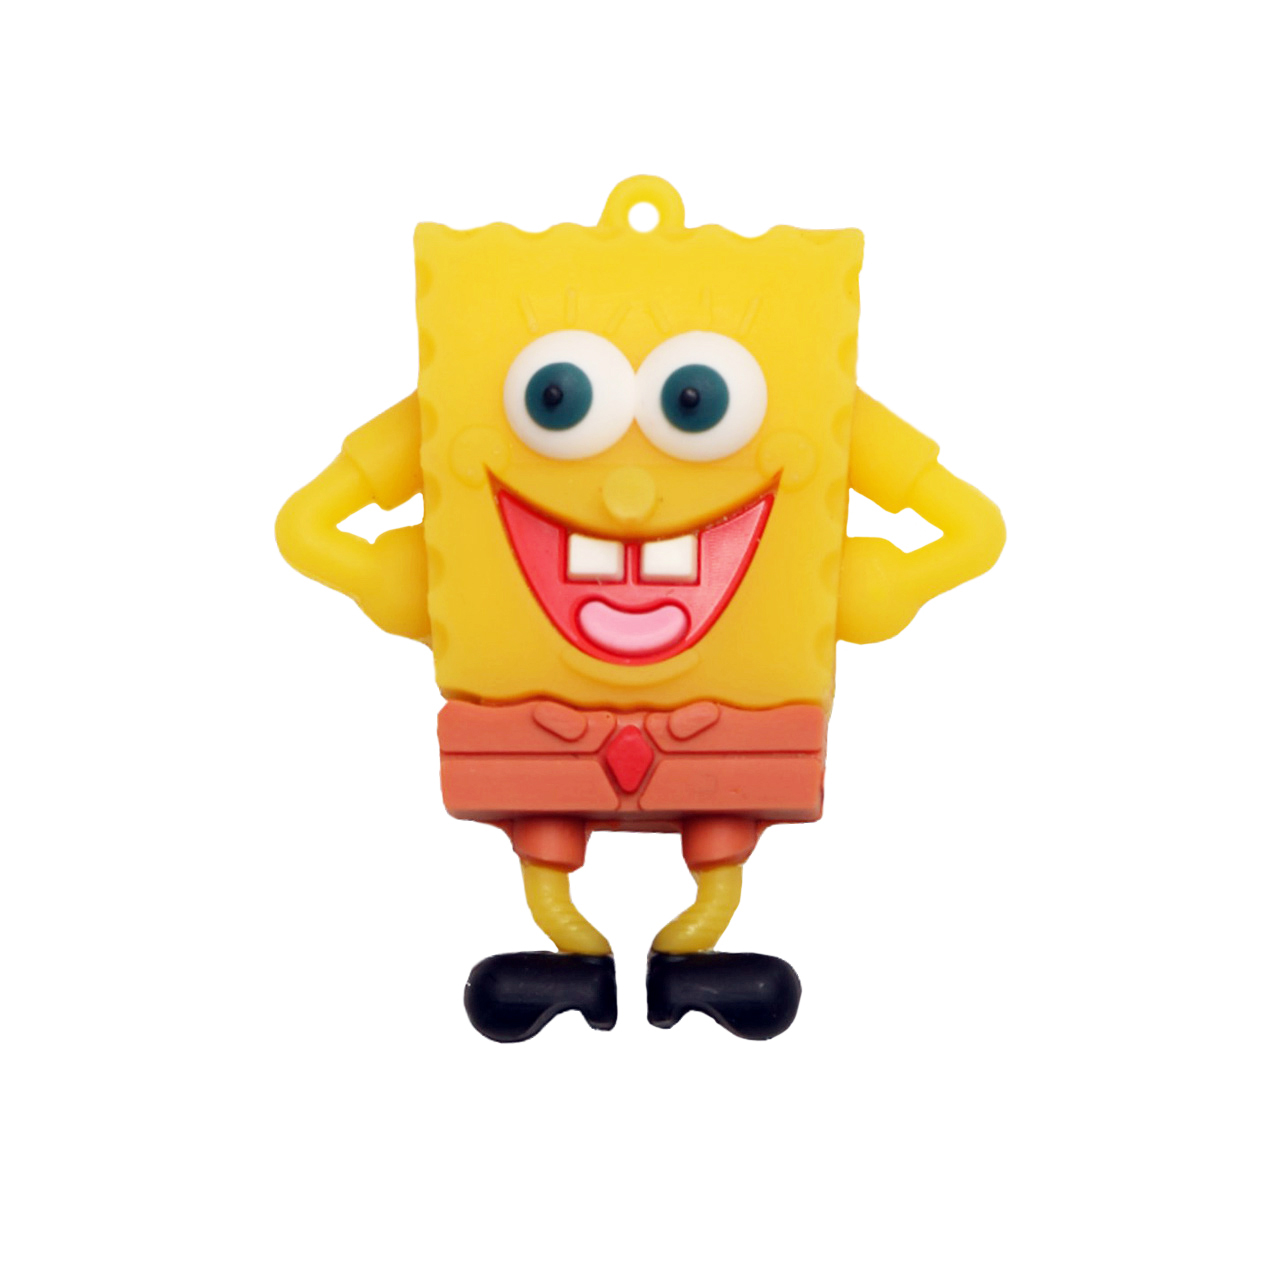 فلش مموری دایا دیتا طرح Smiling SpongeBob مدل PC1019-USB3 ظرفیت 32 گیگابایت